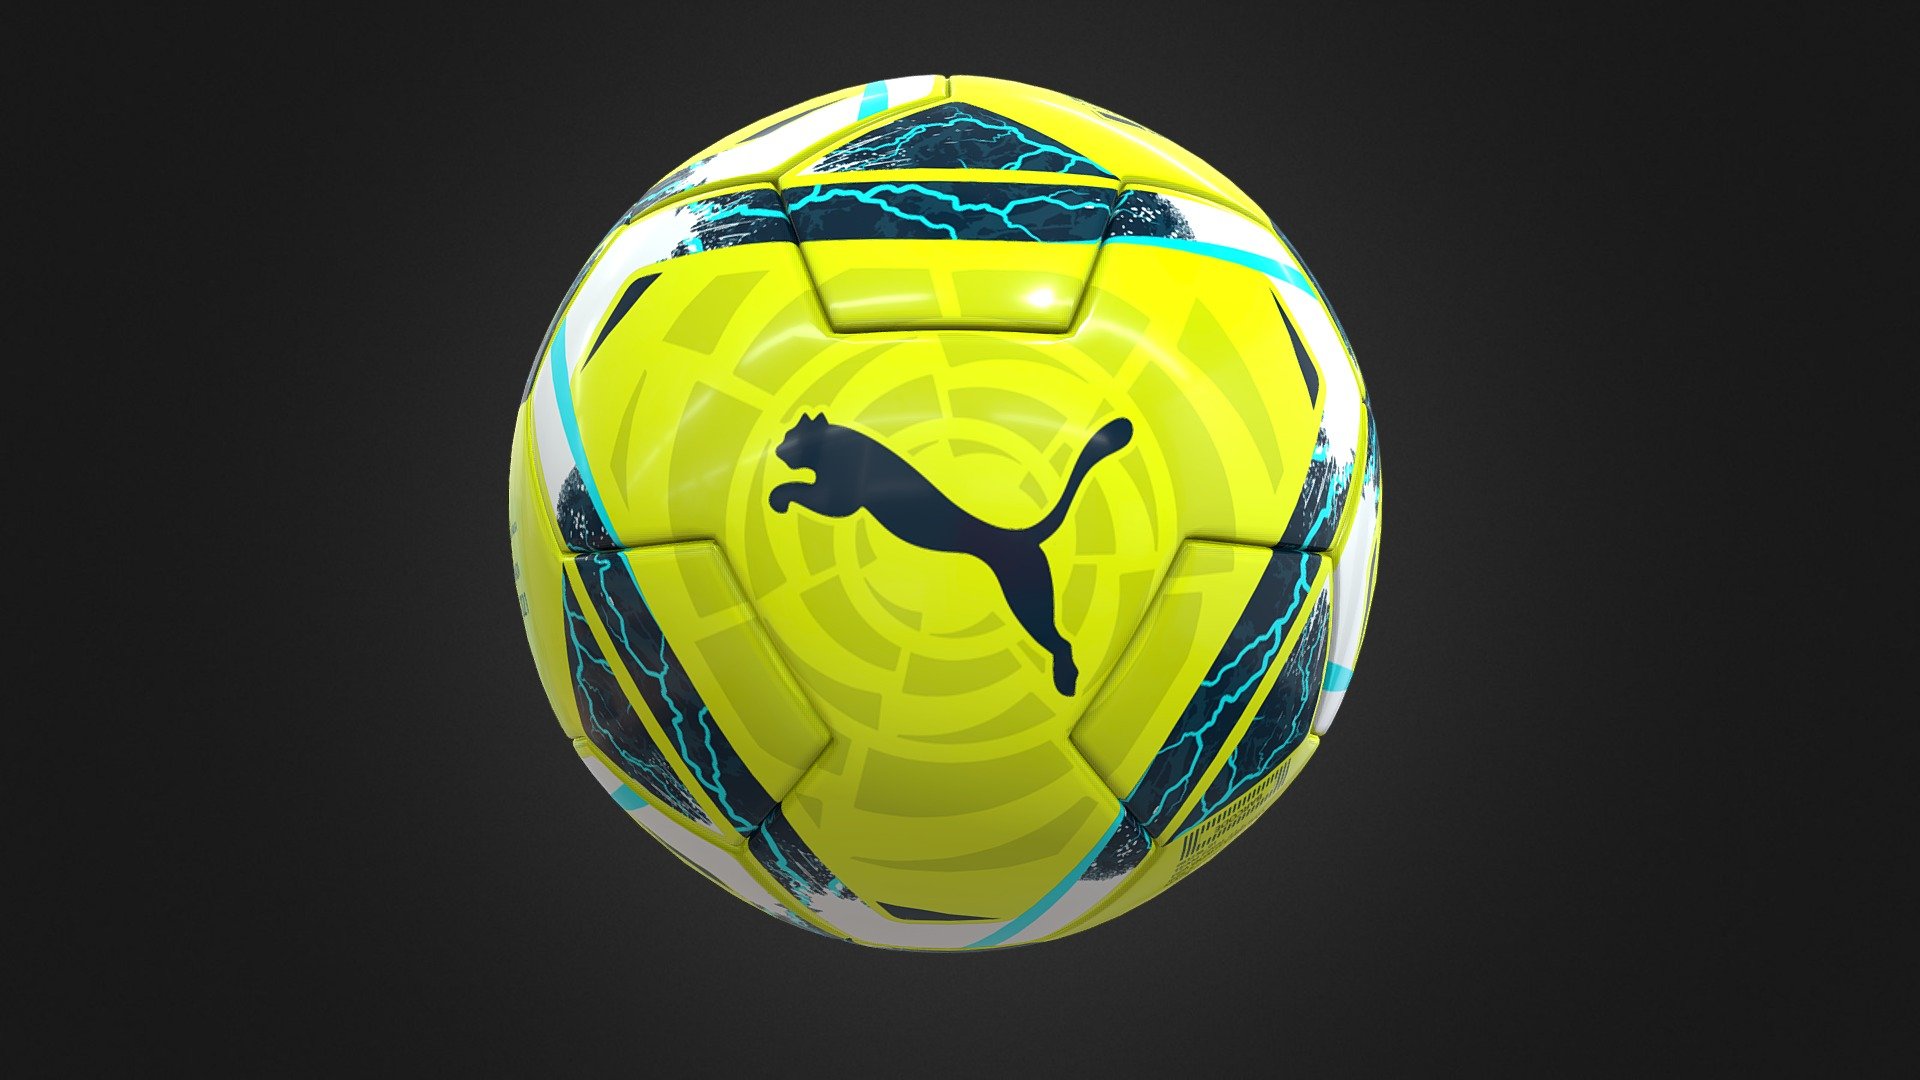 laliga puma ball - 3D model by zyciewedlugzasad 3d model